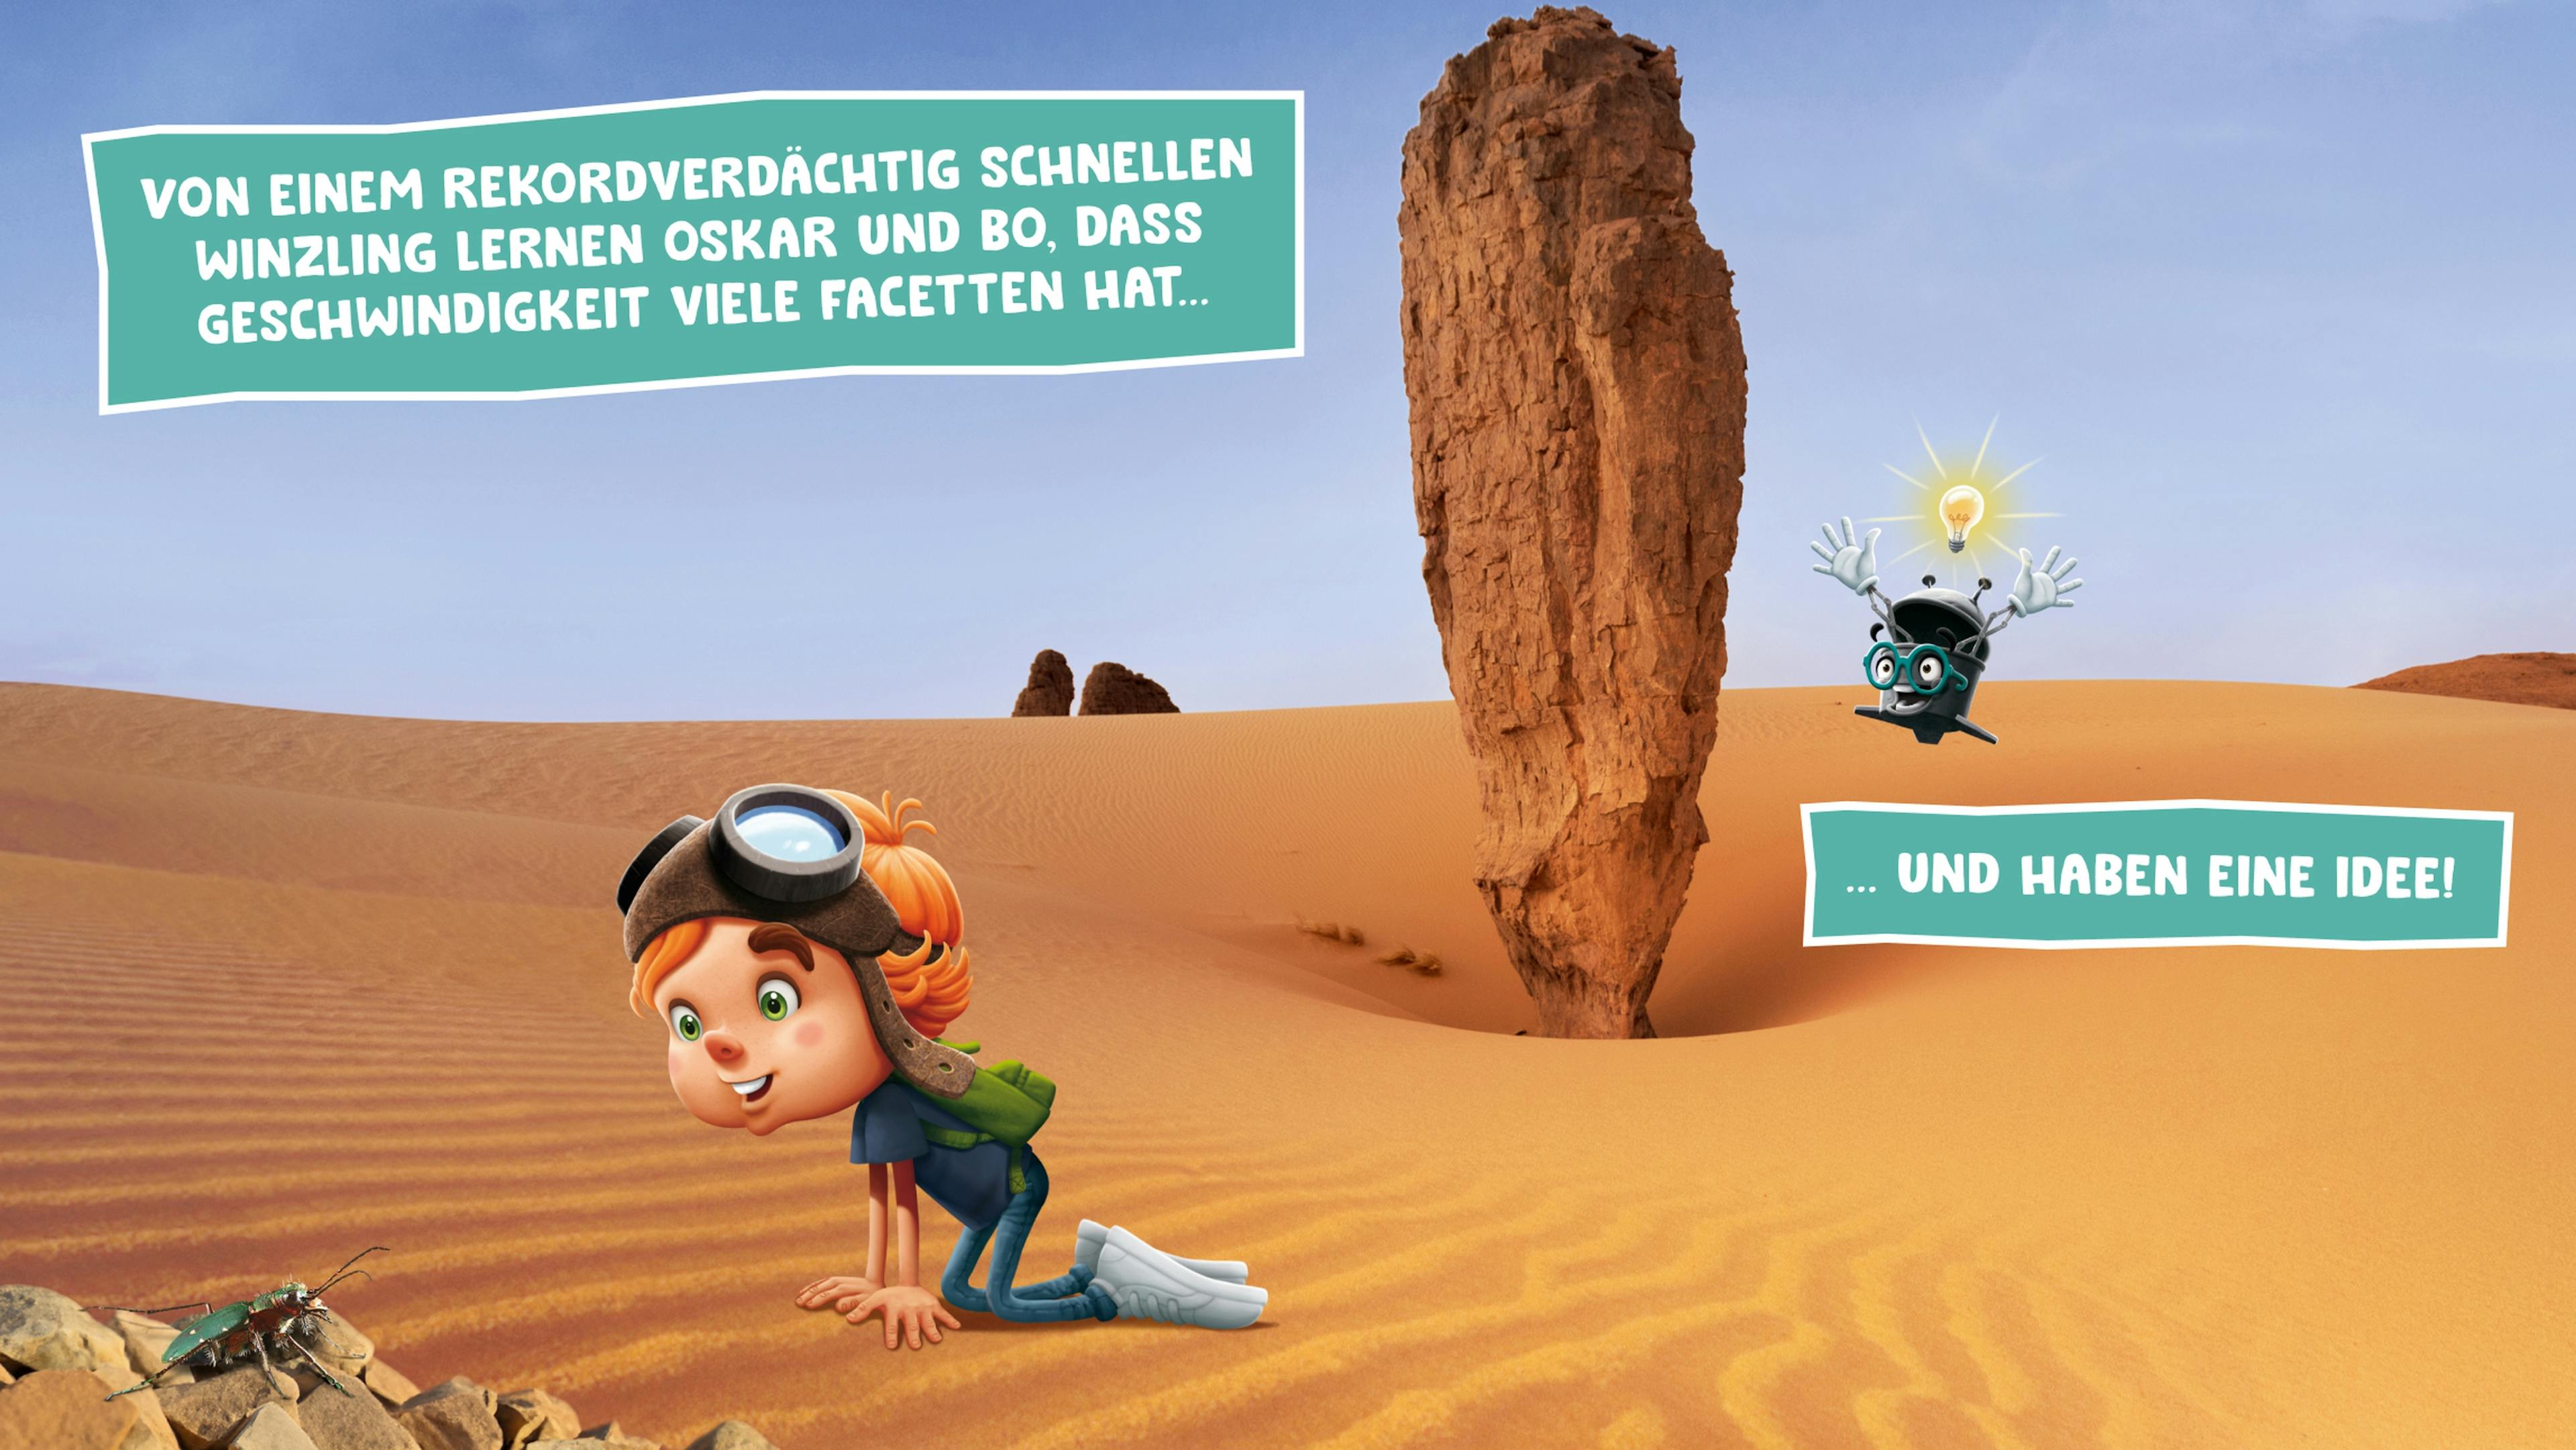 Oskar kniet in der Wüste auf dem Boden und redet mit einem Sandlaufkäfer während Bo im Hintergrund auf eine Idee kommt. © goodmatters